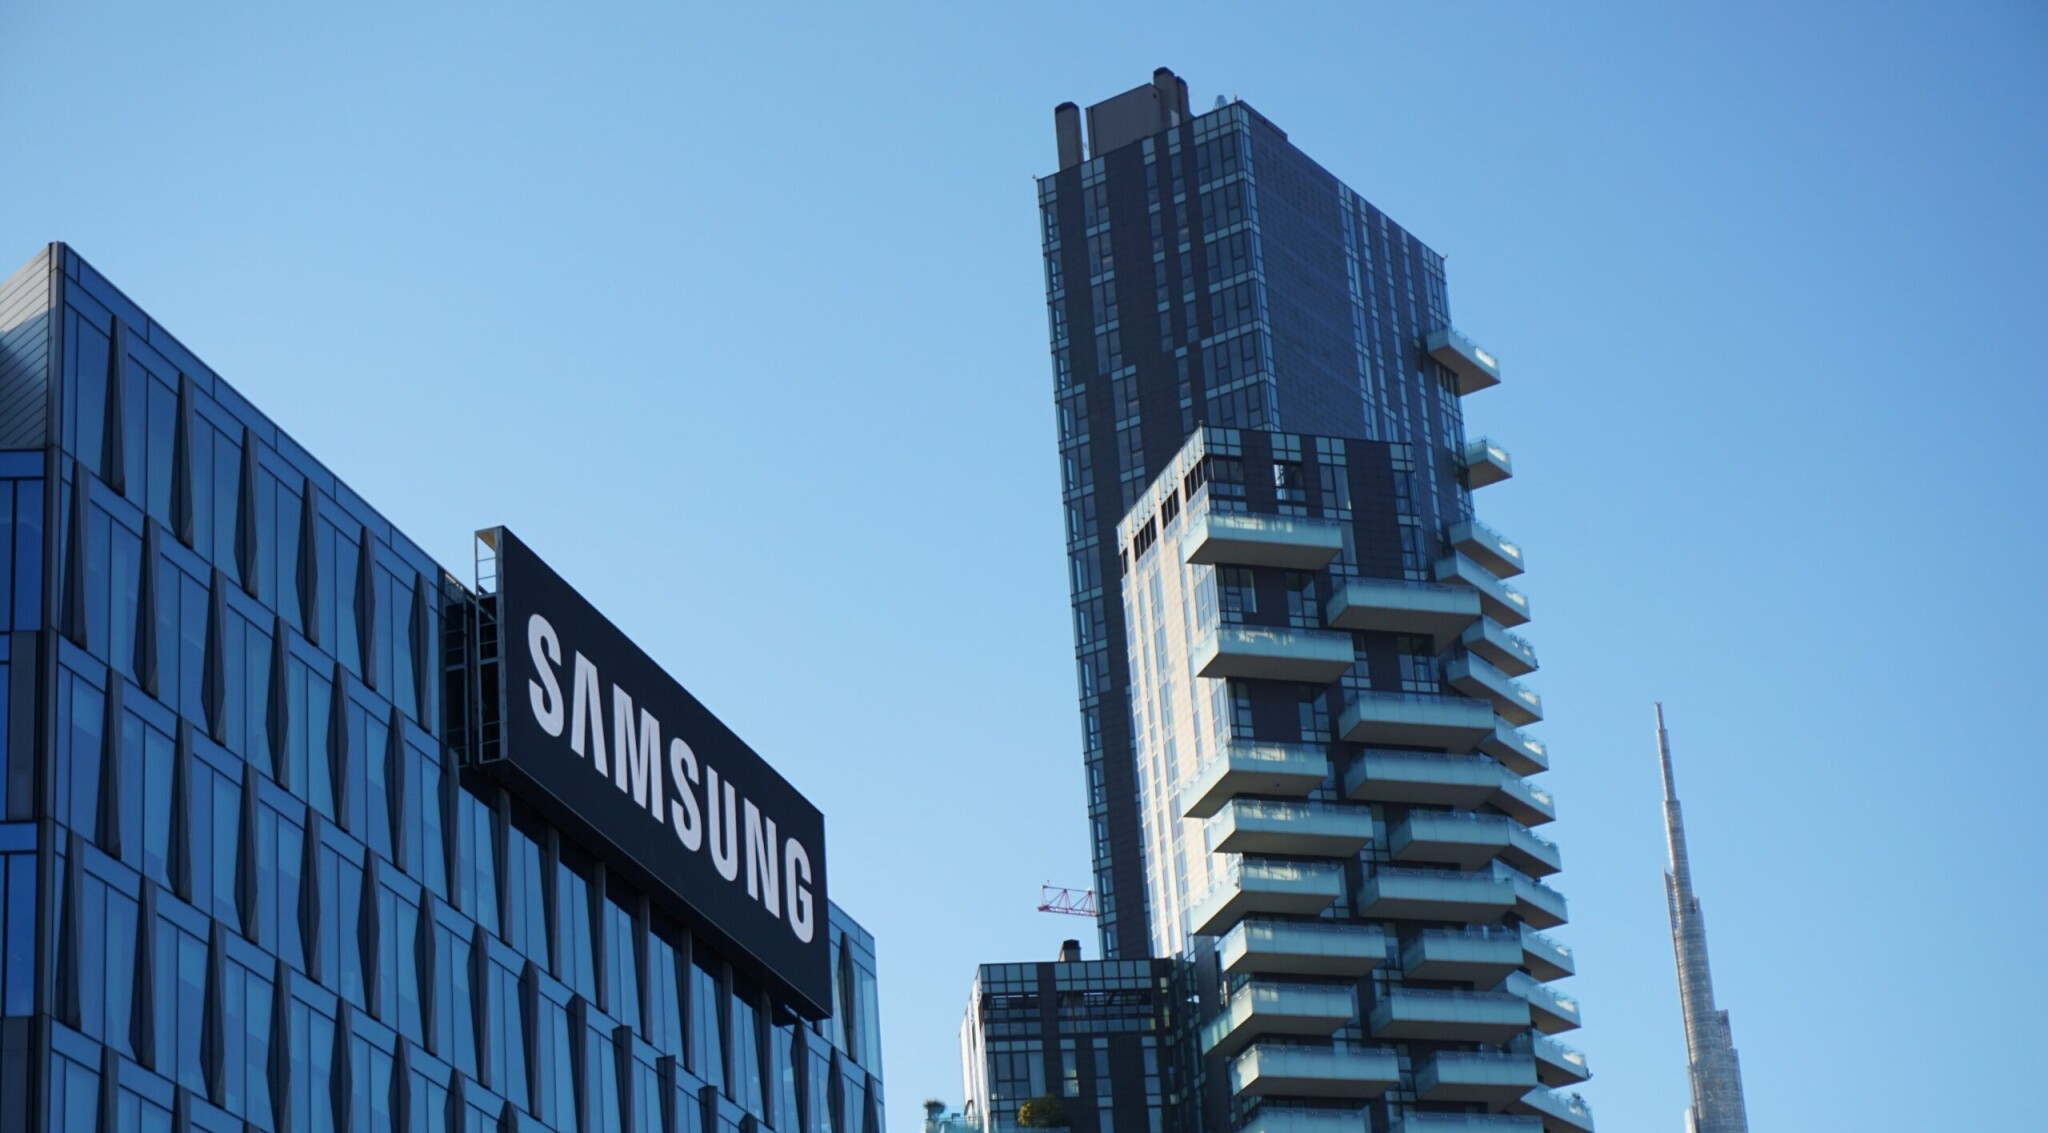 Samsungu po třech letech klesl provozní zisk. Projevila se nižší poptávka